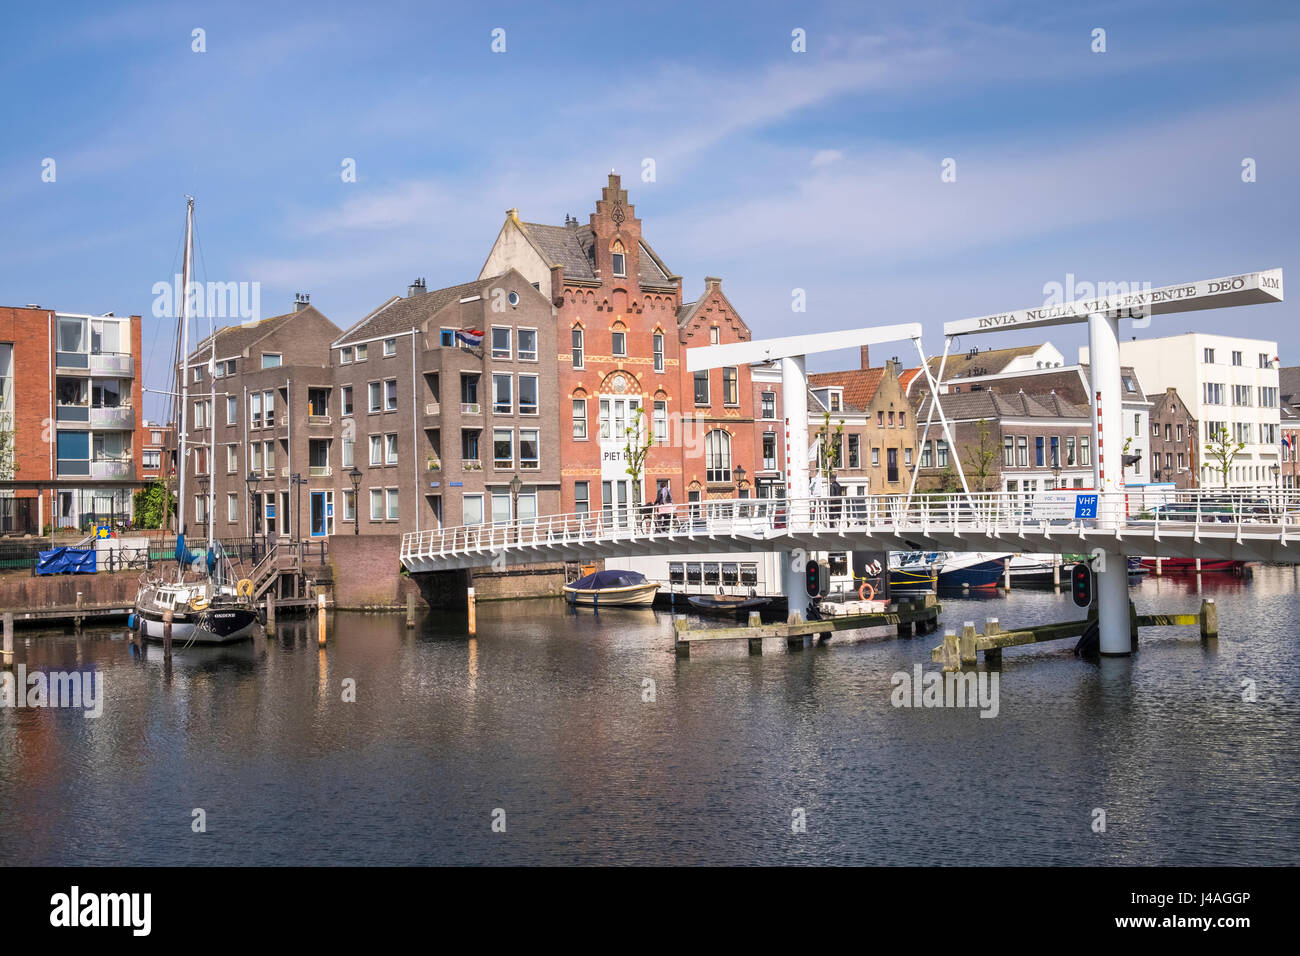 Boote und traditionelle niederländische Architektur im historischen Viertel von Delfshaven, Rotterdam, Niederlande. Stockfoto